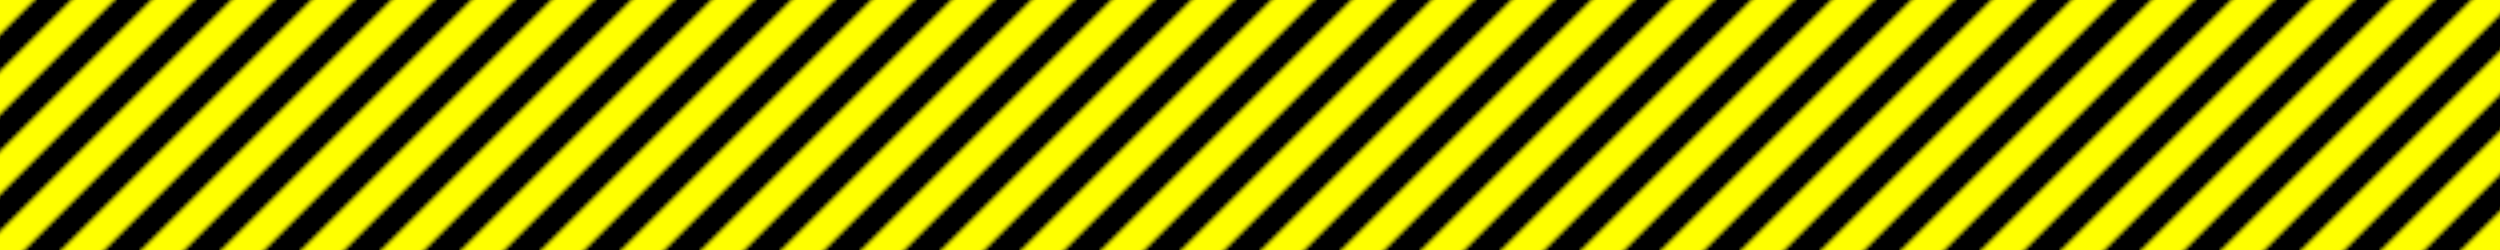 Warning (black and yellow) divider